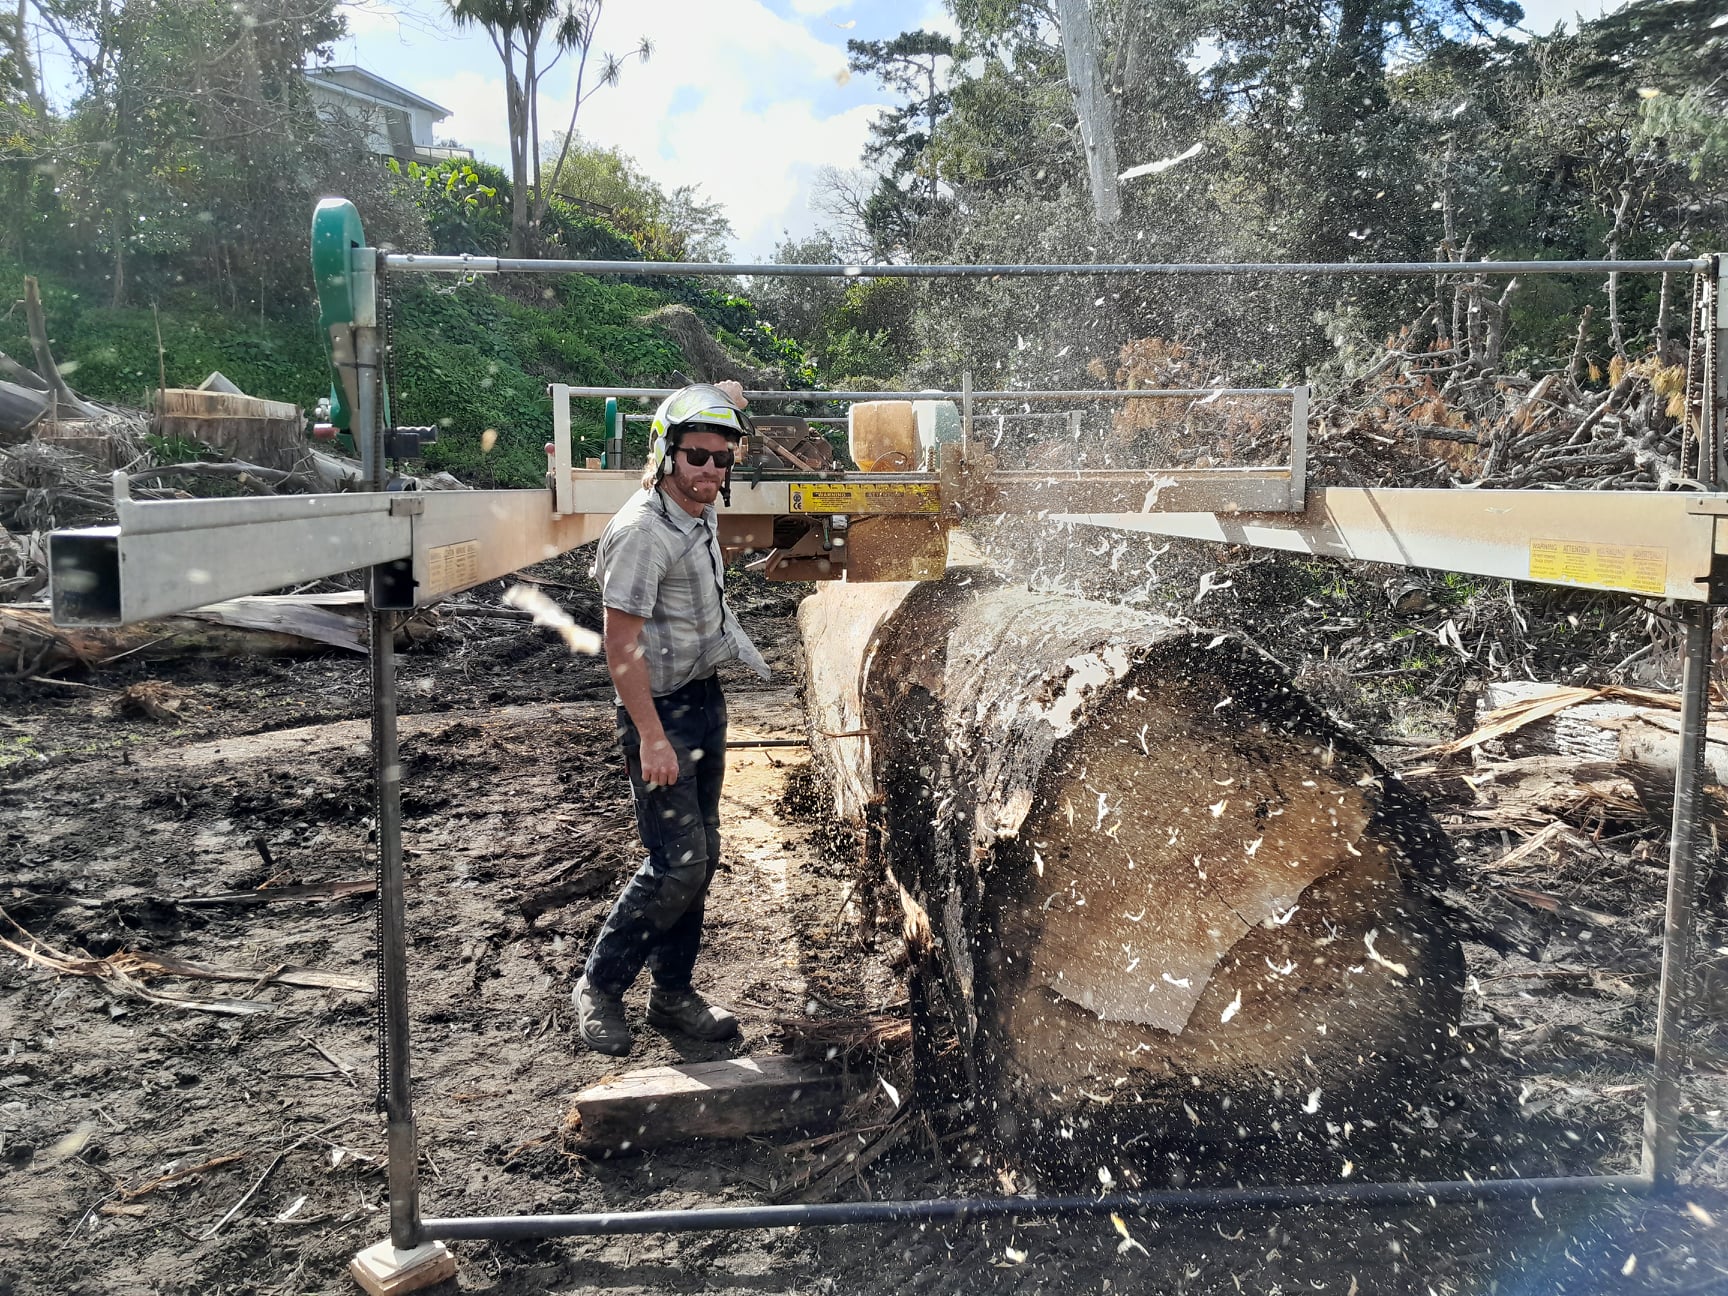 Hamish milling a large marcrocarpa log